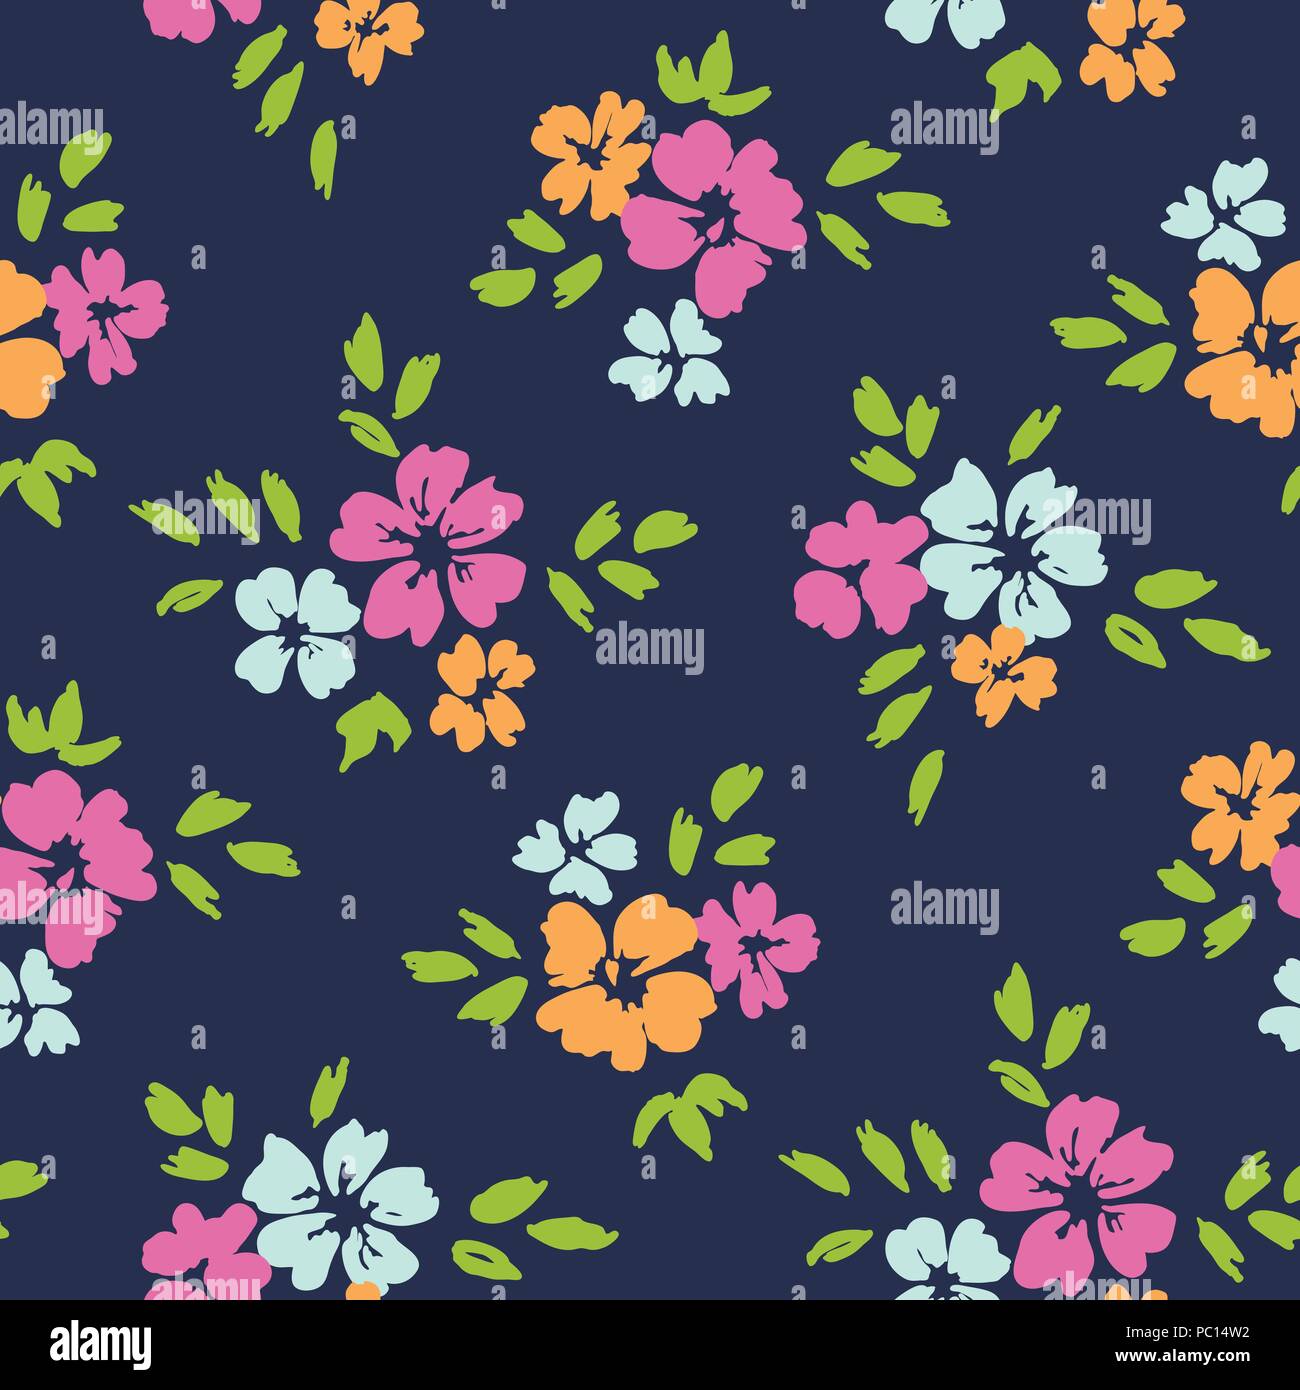 Grande échelle coloré vecteur floral seamless pattern. La main surdimensionnés simpliste des fleurs sur fond bleu foncé. Fleurs et feuillages stylisés Illustration de Vecteur